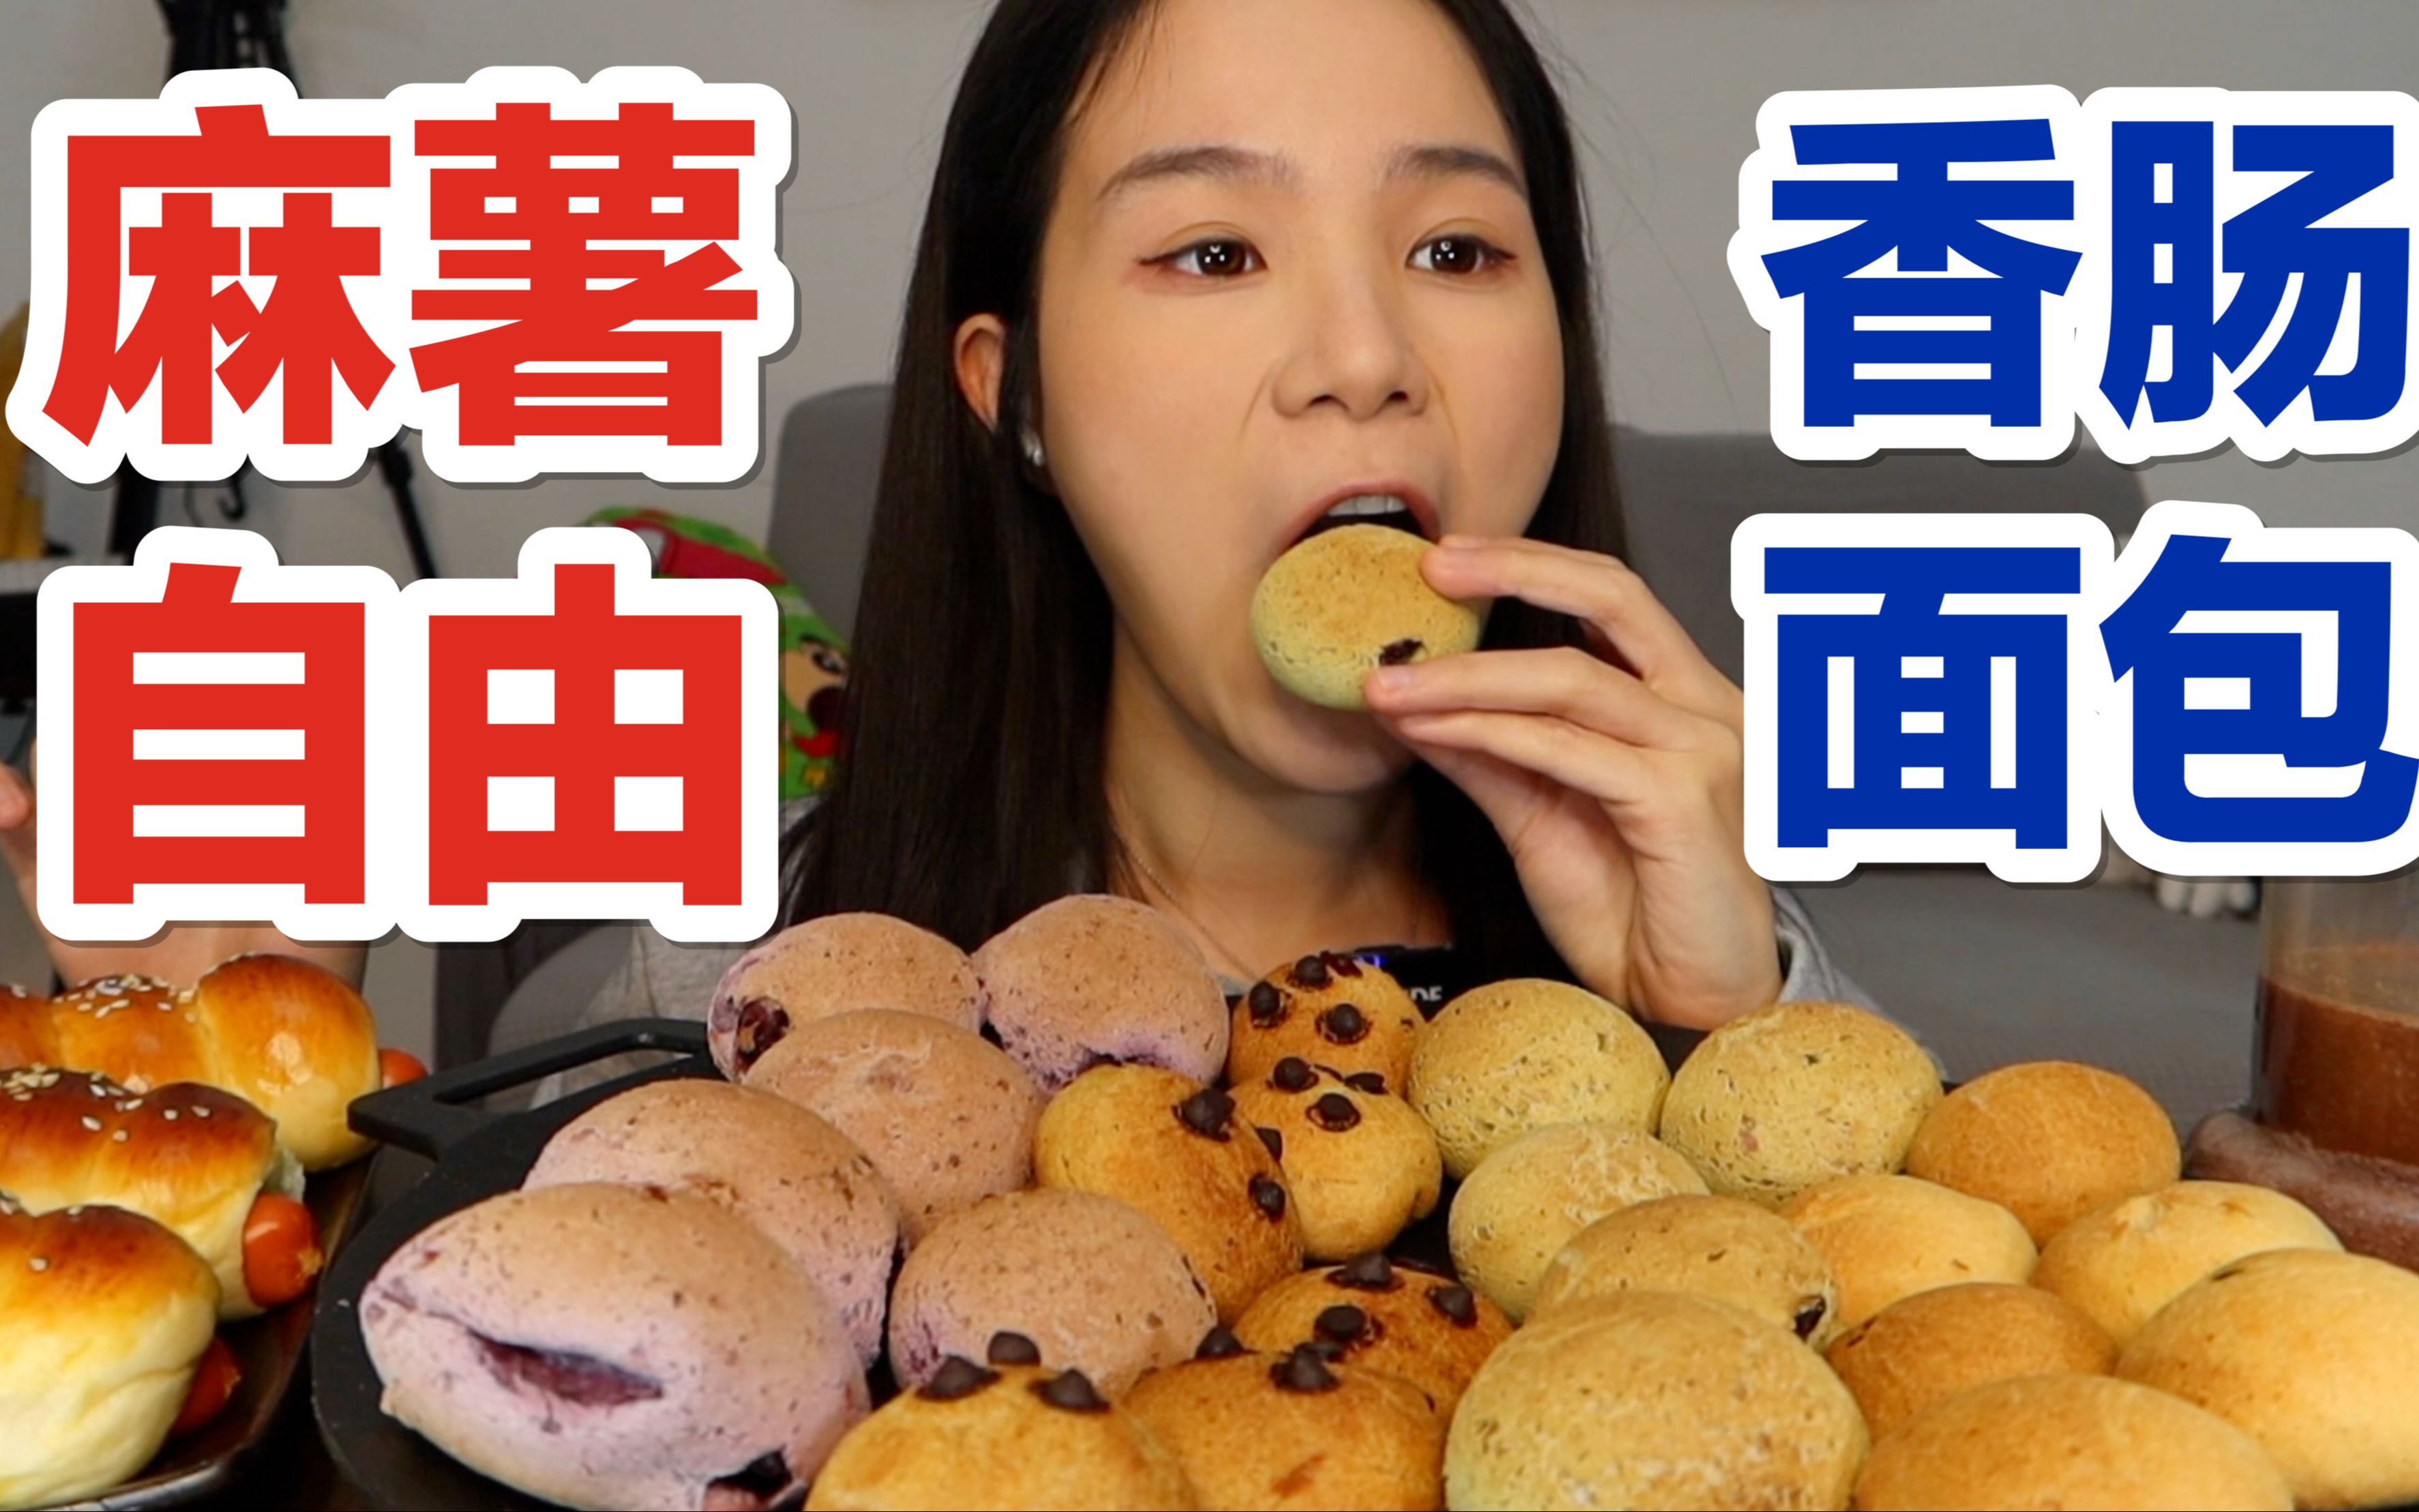 韩国人来贵州嗦羊肉粉！被阿姨推荐吃不辣的辣椒 好香 嗯..?-小胃希希-小胃希希-哔哩哔哩视频